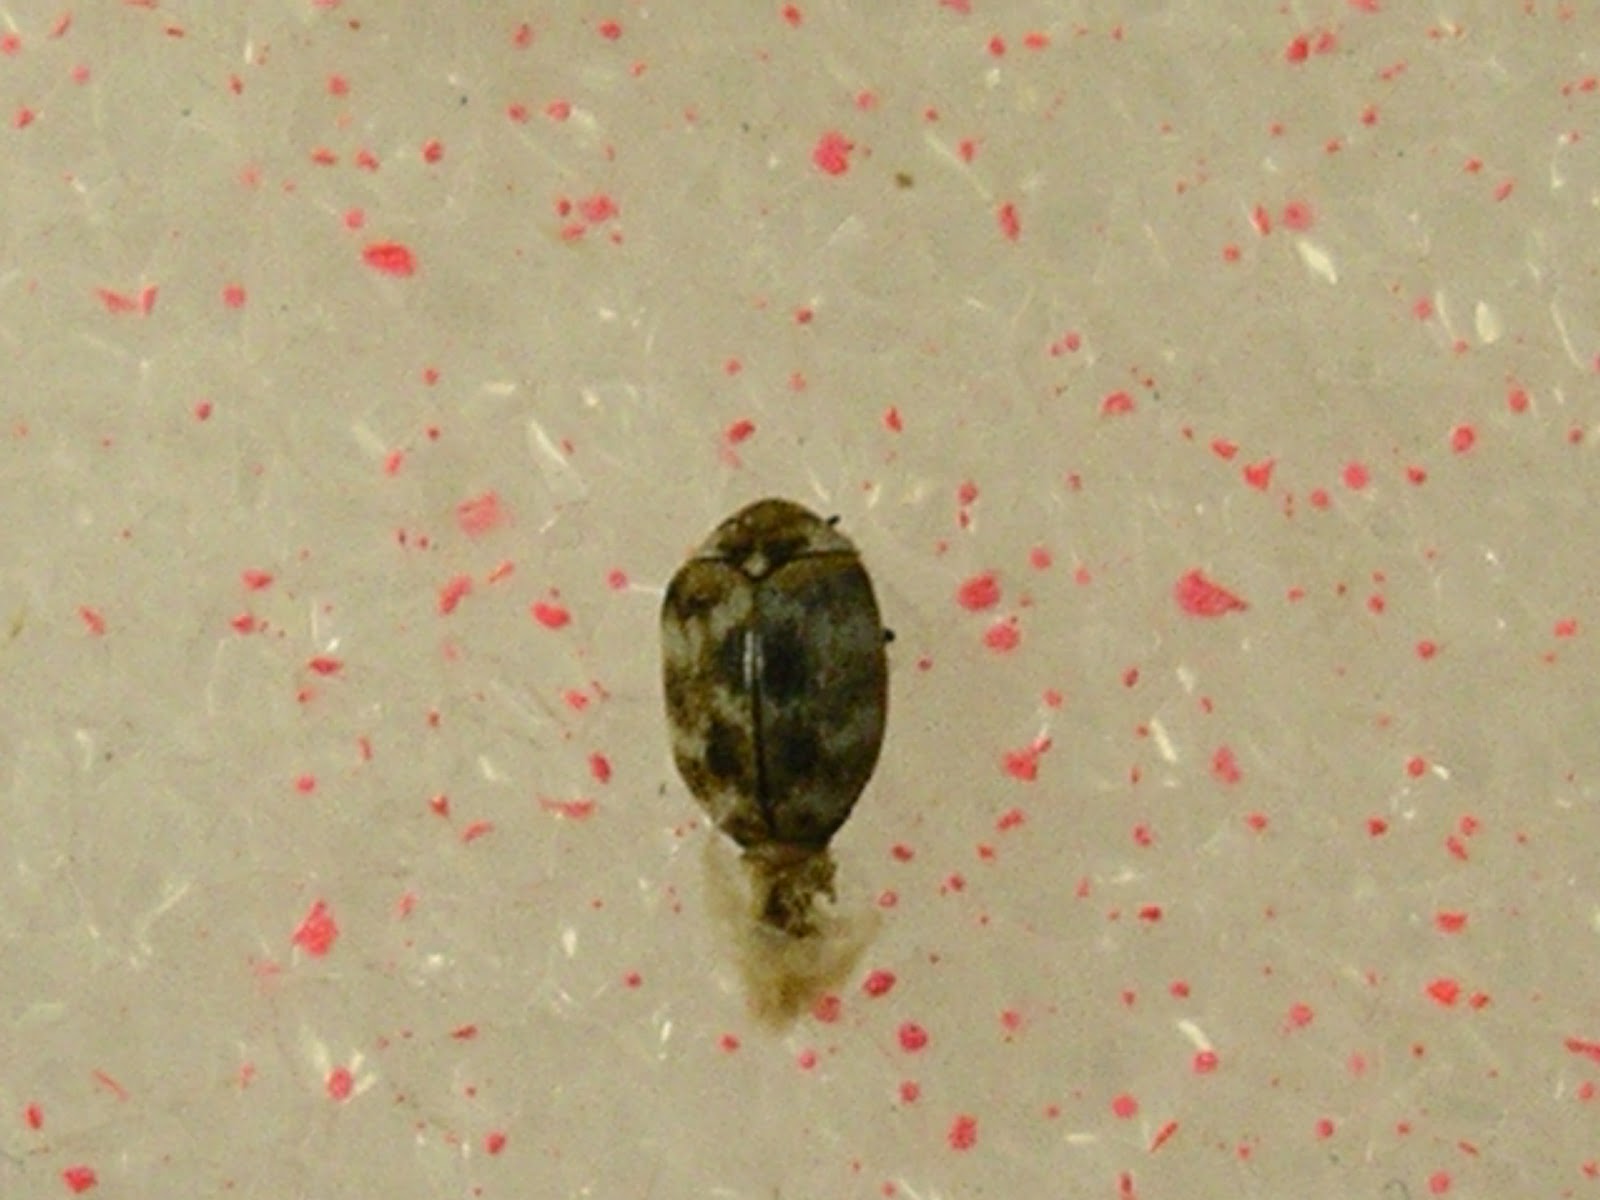 Carpet beetle adult.